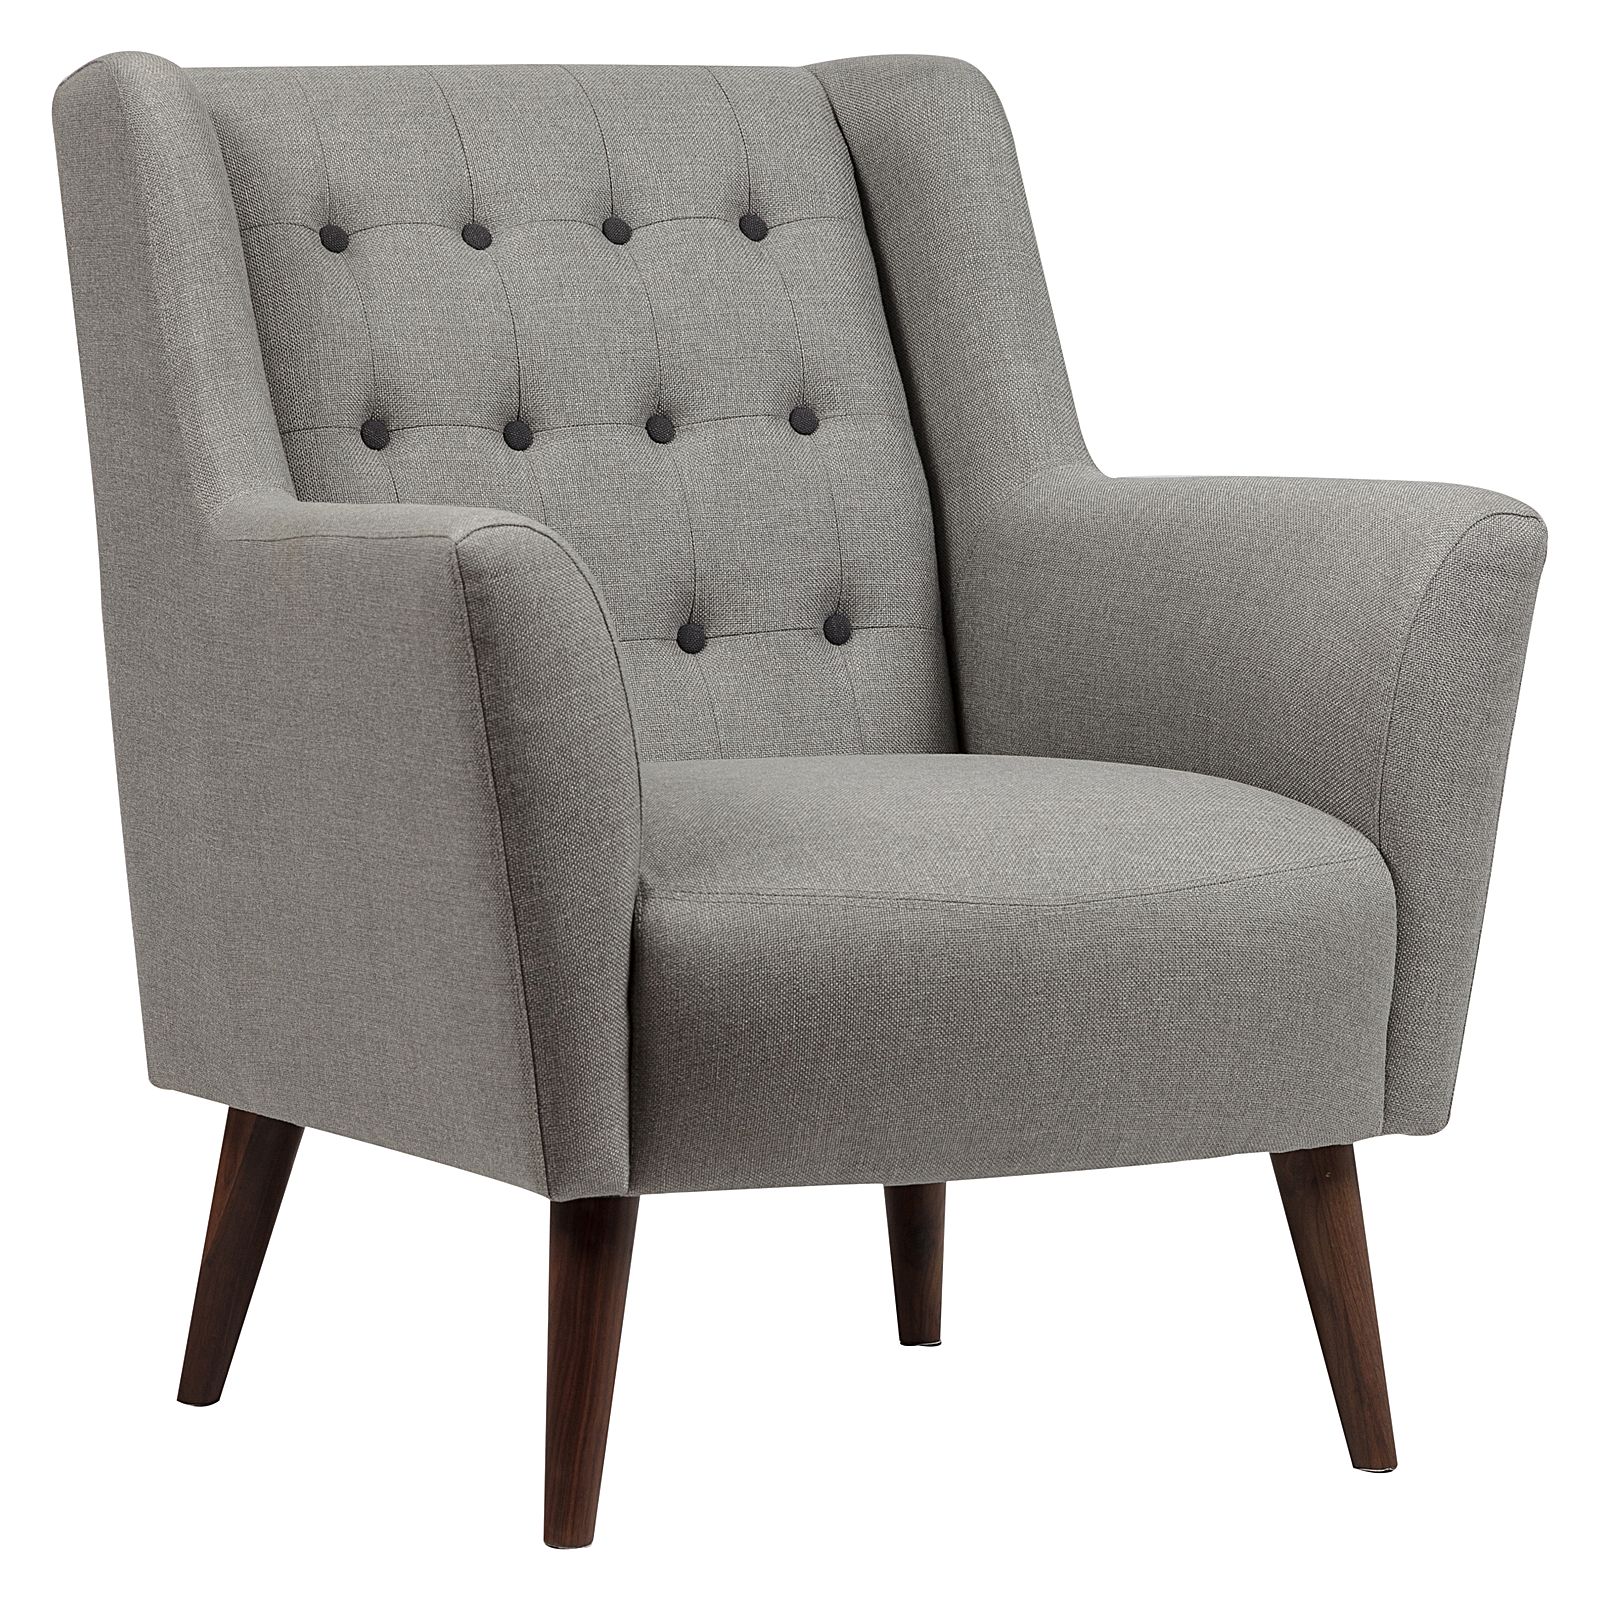 Chào đón những năm 2020, chúng tôi mang đến cho quý khách hàng bộ sưu tập Ghế sofa đơn cổ điển đẳng cấp, sang trọng. Với thiết kế tinh xảo, các chi tiết họa tiết cổ điển và chất liệu cao cấp, ghế sofa đơn cổ điển sẽ làm tăng thêm vẻ đẹp cho căn phòng của bạn.